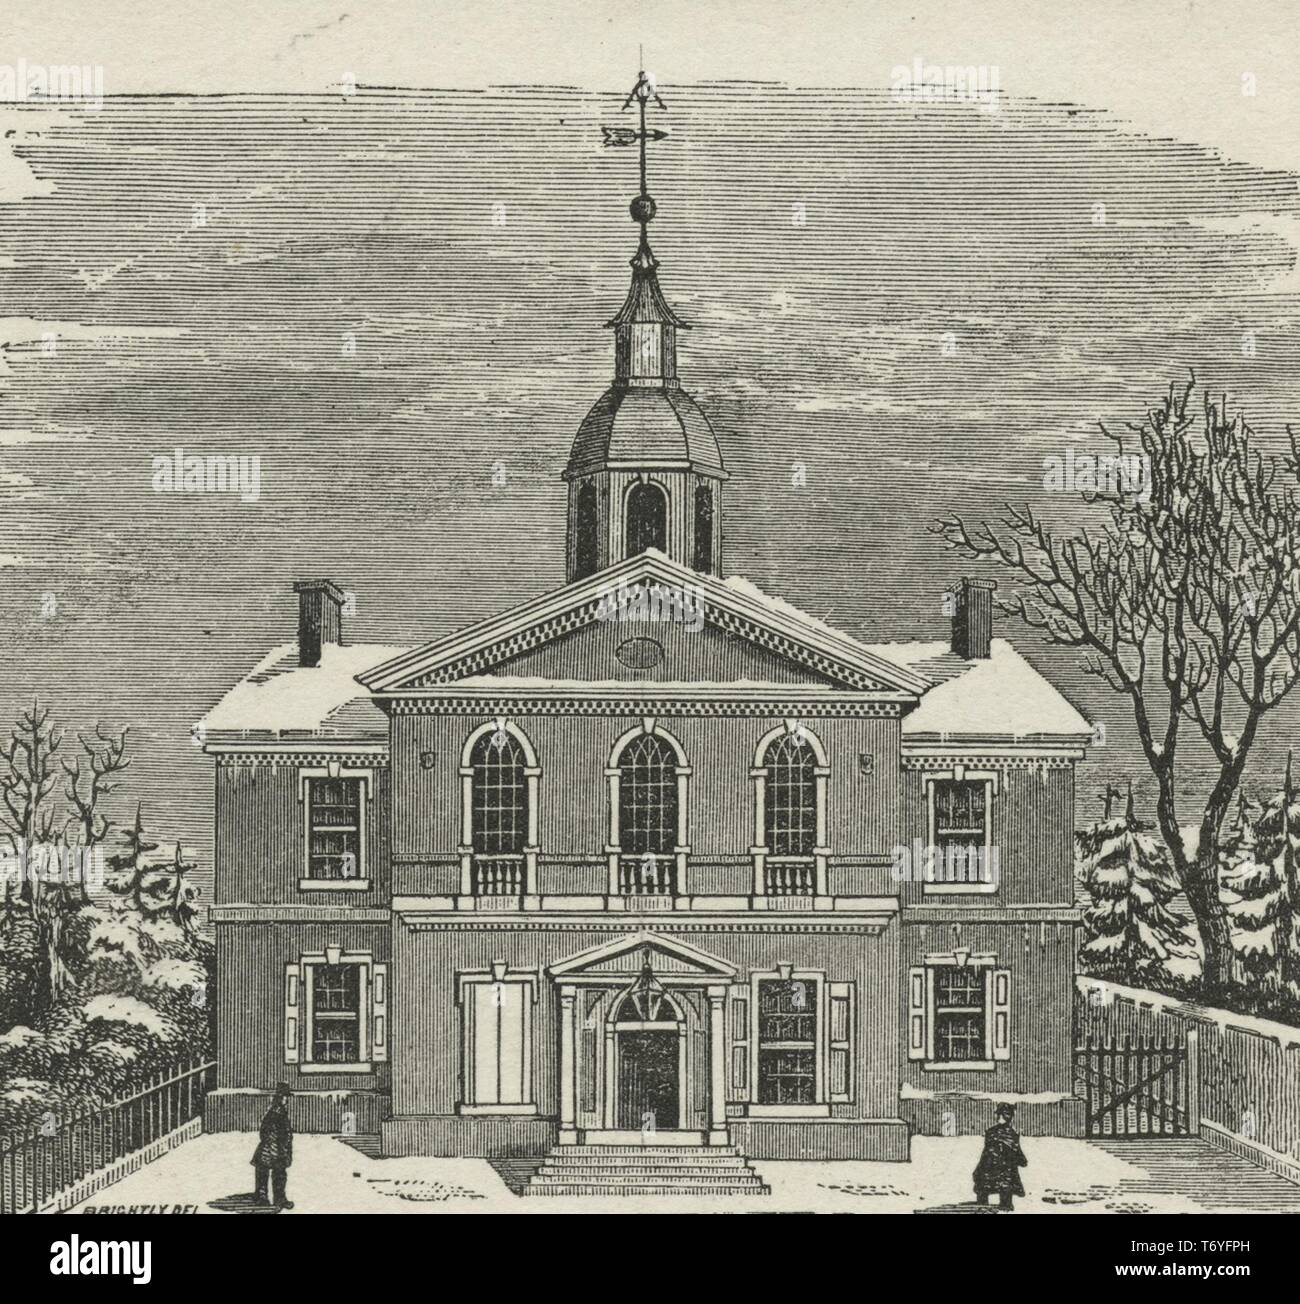 Gravure du Carpenter's Hall, un lieu de rencontre dans le début de l'histoire des États-Unis, Philadelphie, Pennsylvanie, 1870. À partir de la Bibliothèque publique de New York. () Banque D'Images